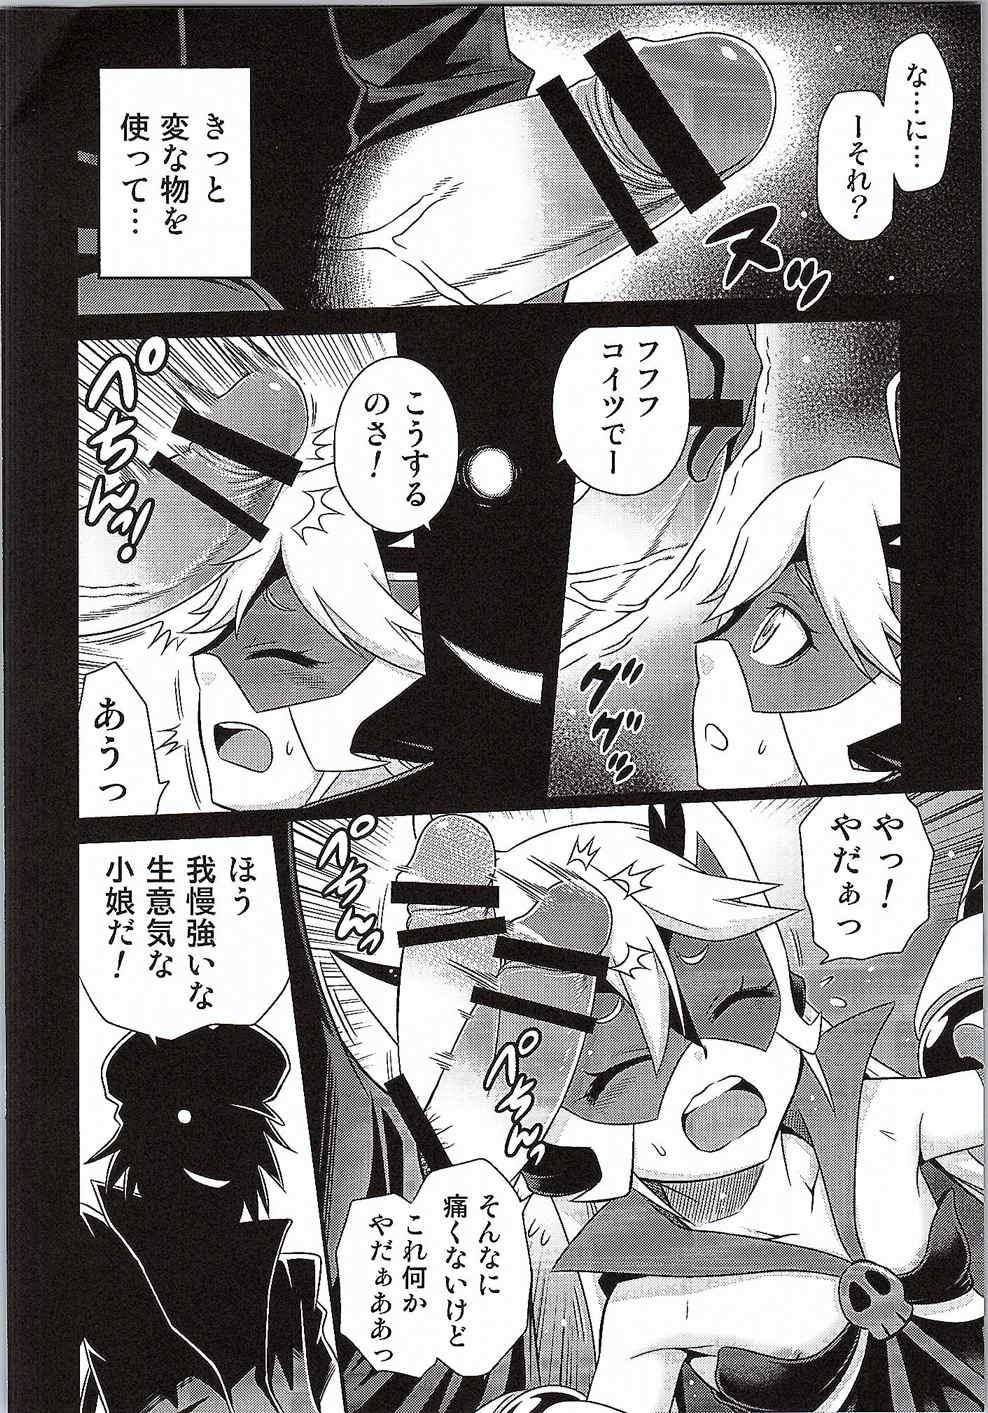 Man Tenshi-chan no Yume wa Yoru Hiraku - Yoru no yatterman Rimming - Page 3